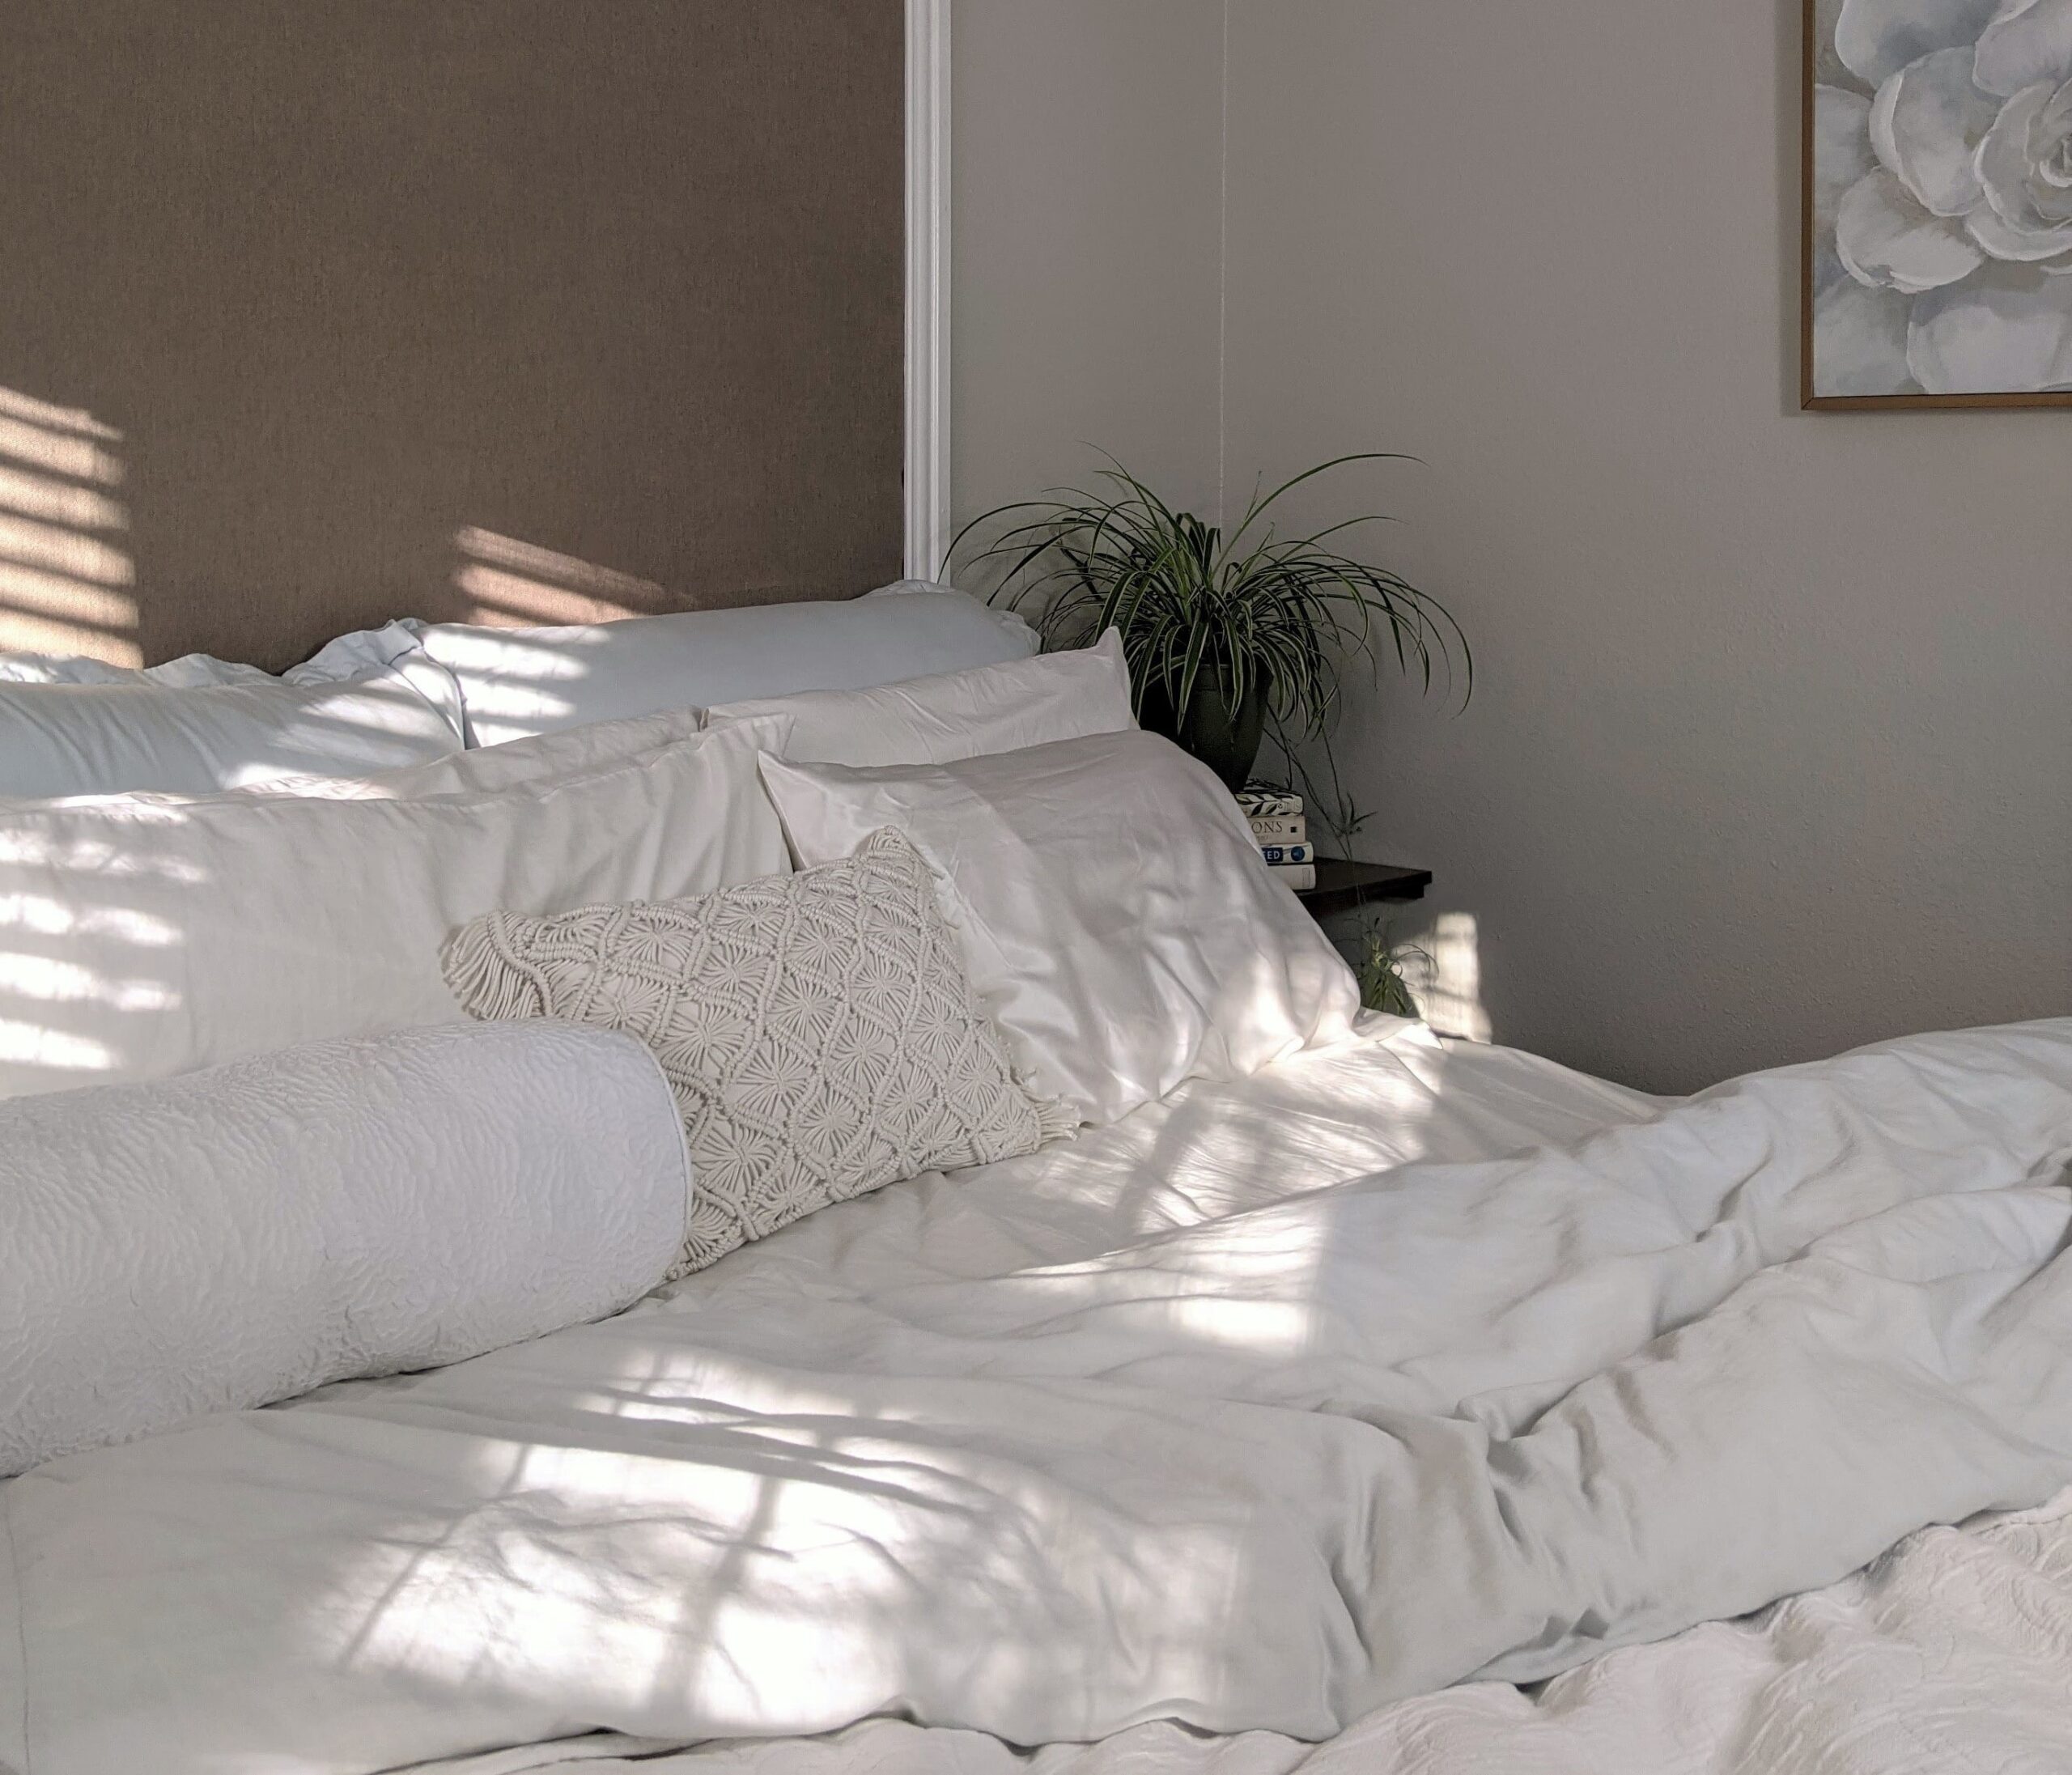 Cómo dormir mejor gracias a la decoración: 6 consejos 1